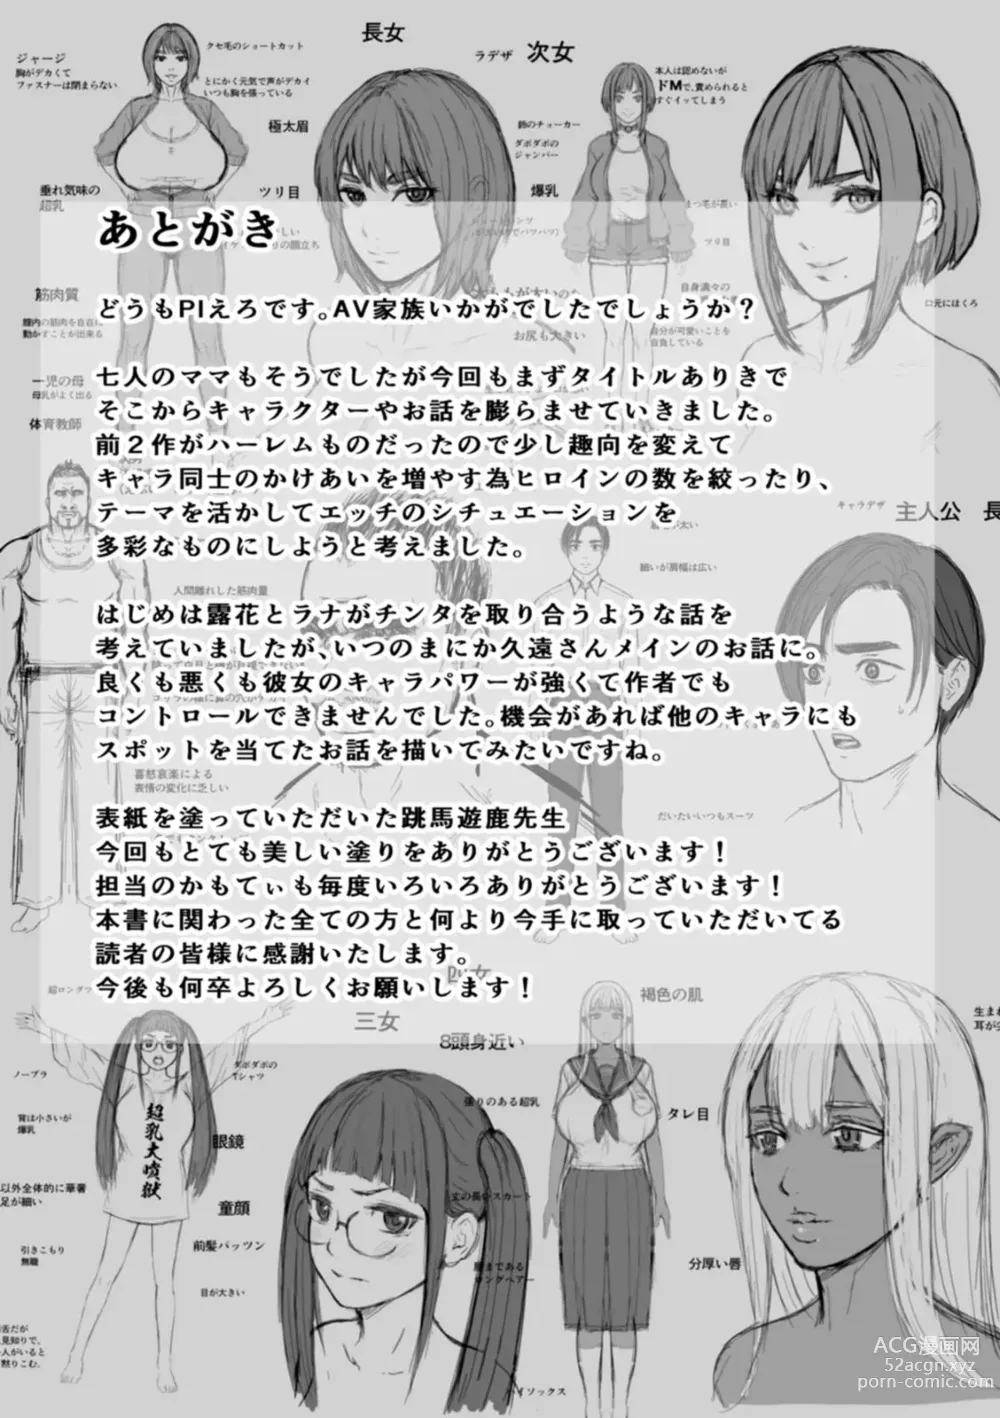 Page 221 of manga AV Kazoku